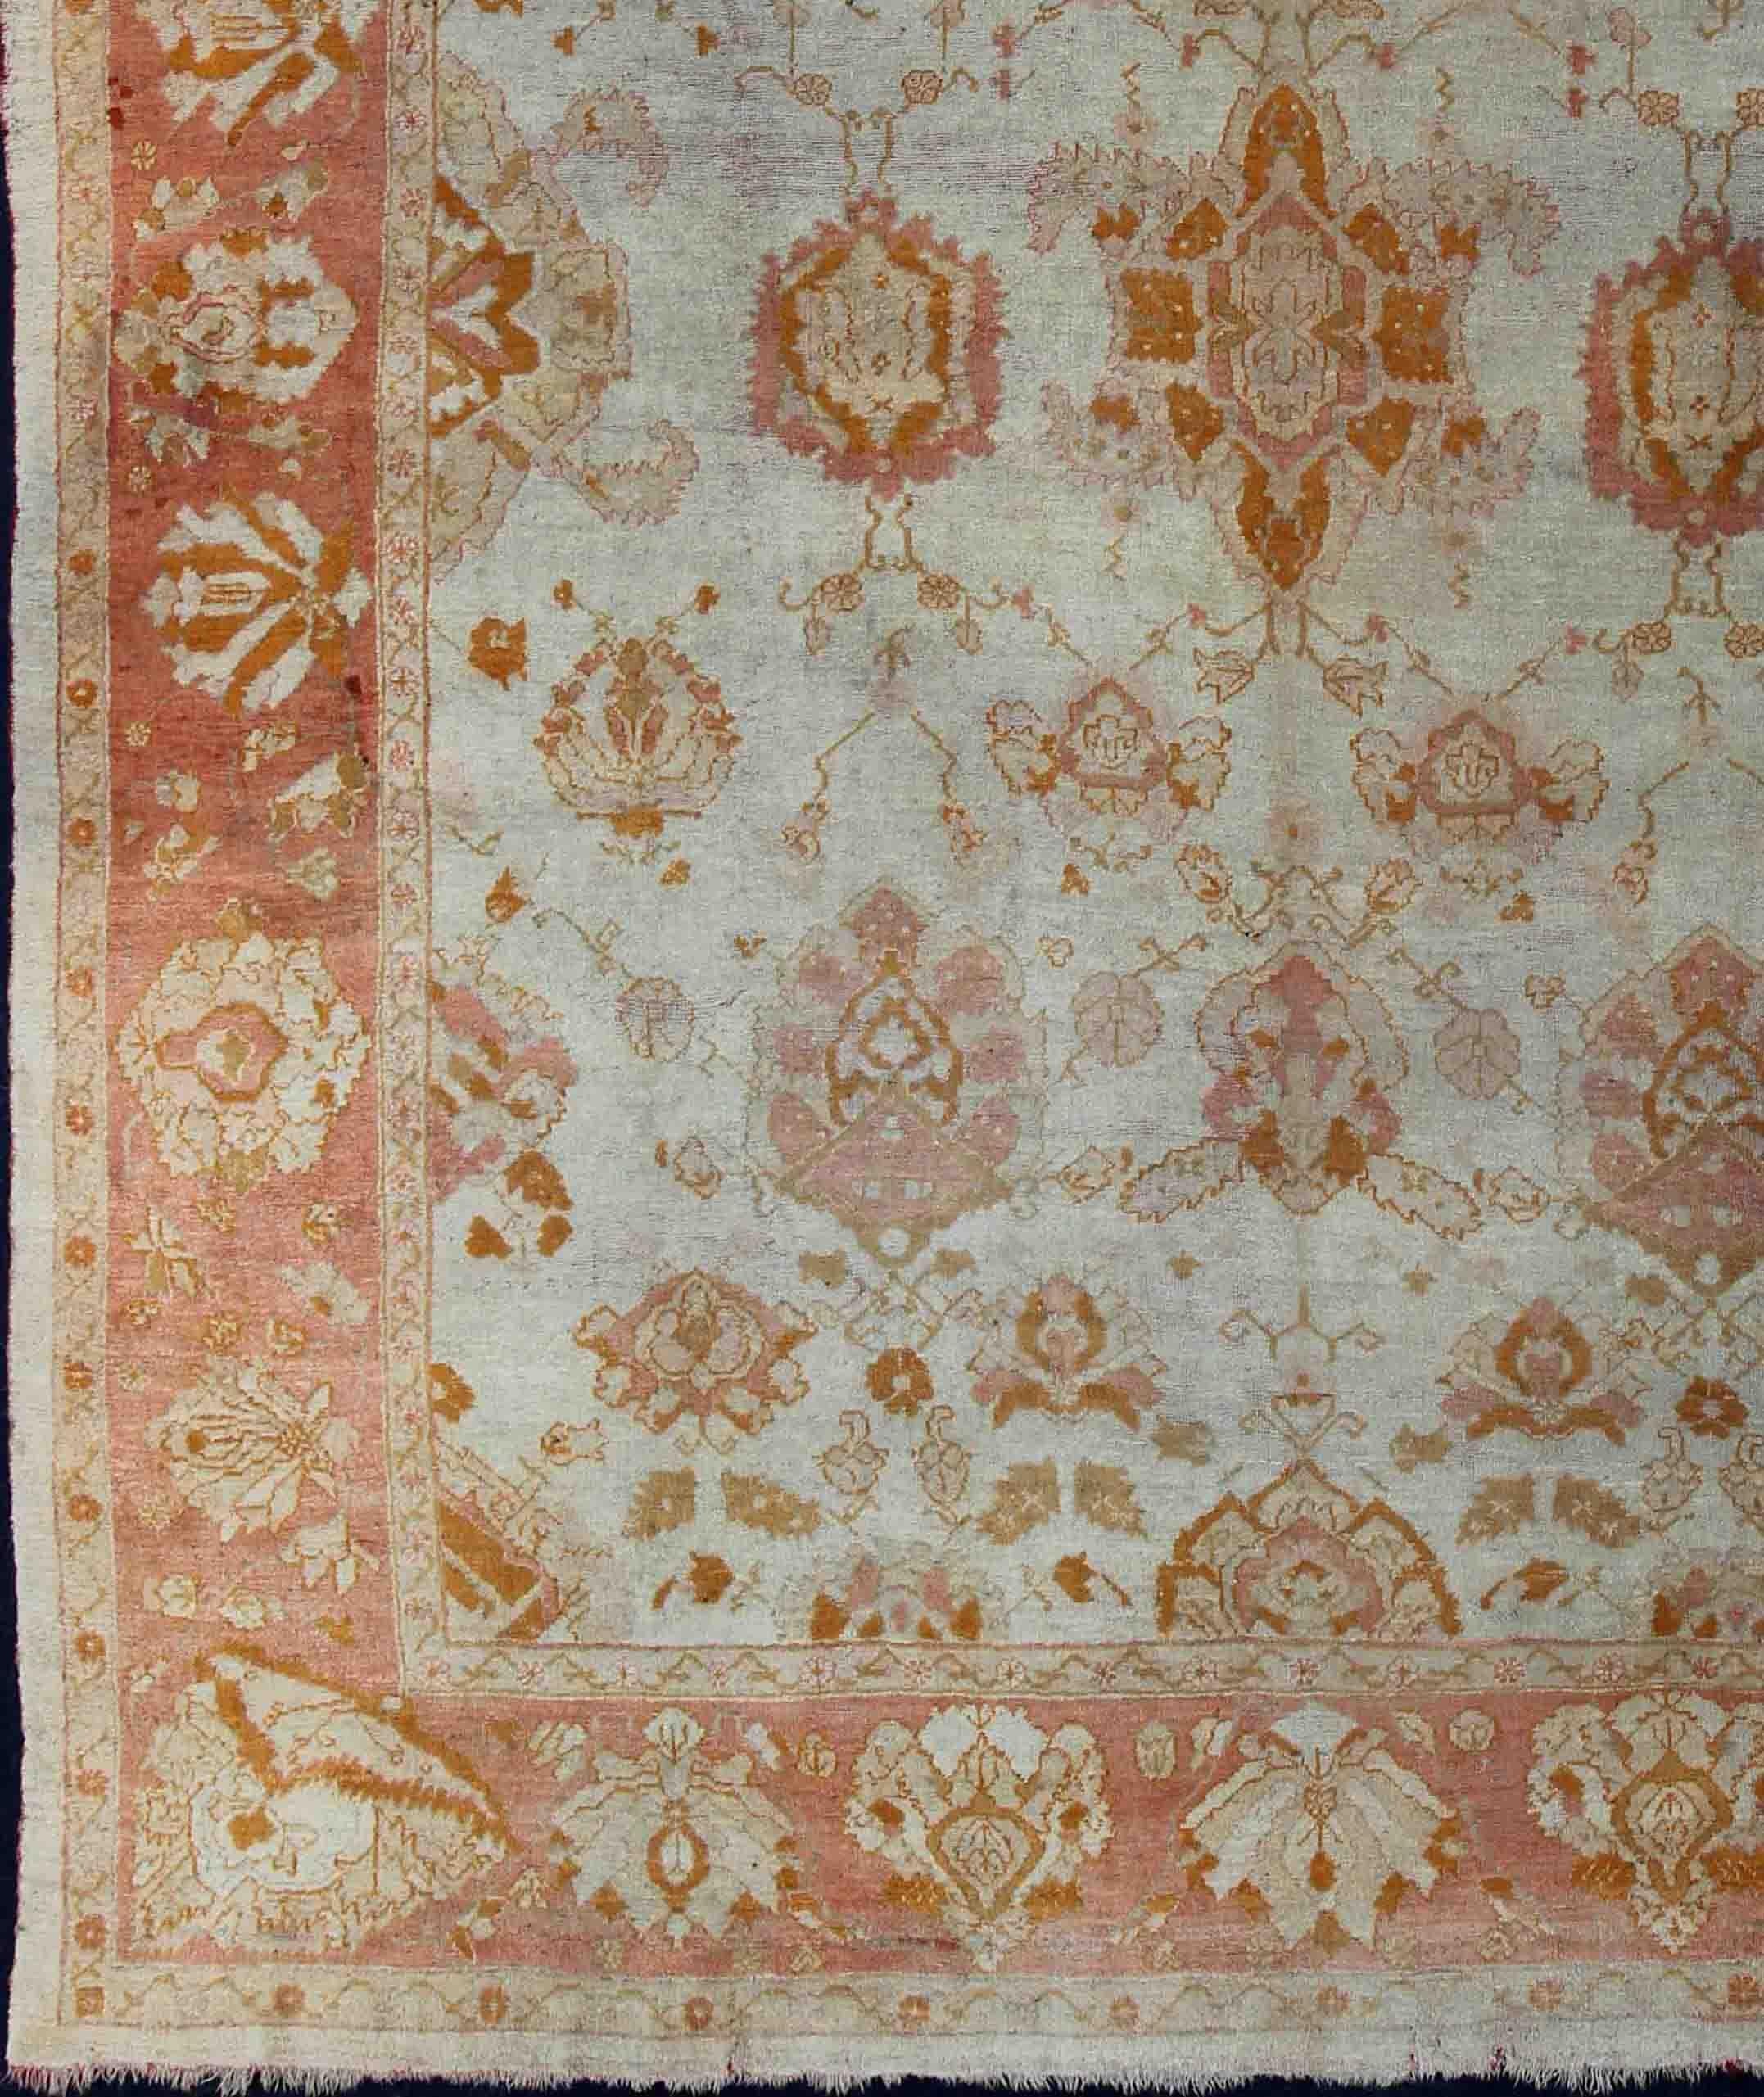 All-over flower design Oushak rug from Turkey. Keivan Woven Arts /  rug 19-0505, country of origin / type: Turkey / Oushak, circa 1900. Antique oushak, Large antique oushak, Turkish oushak
Measures: 13'3 x 16'3.
This Turkish antique Oushak rug